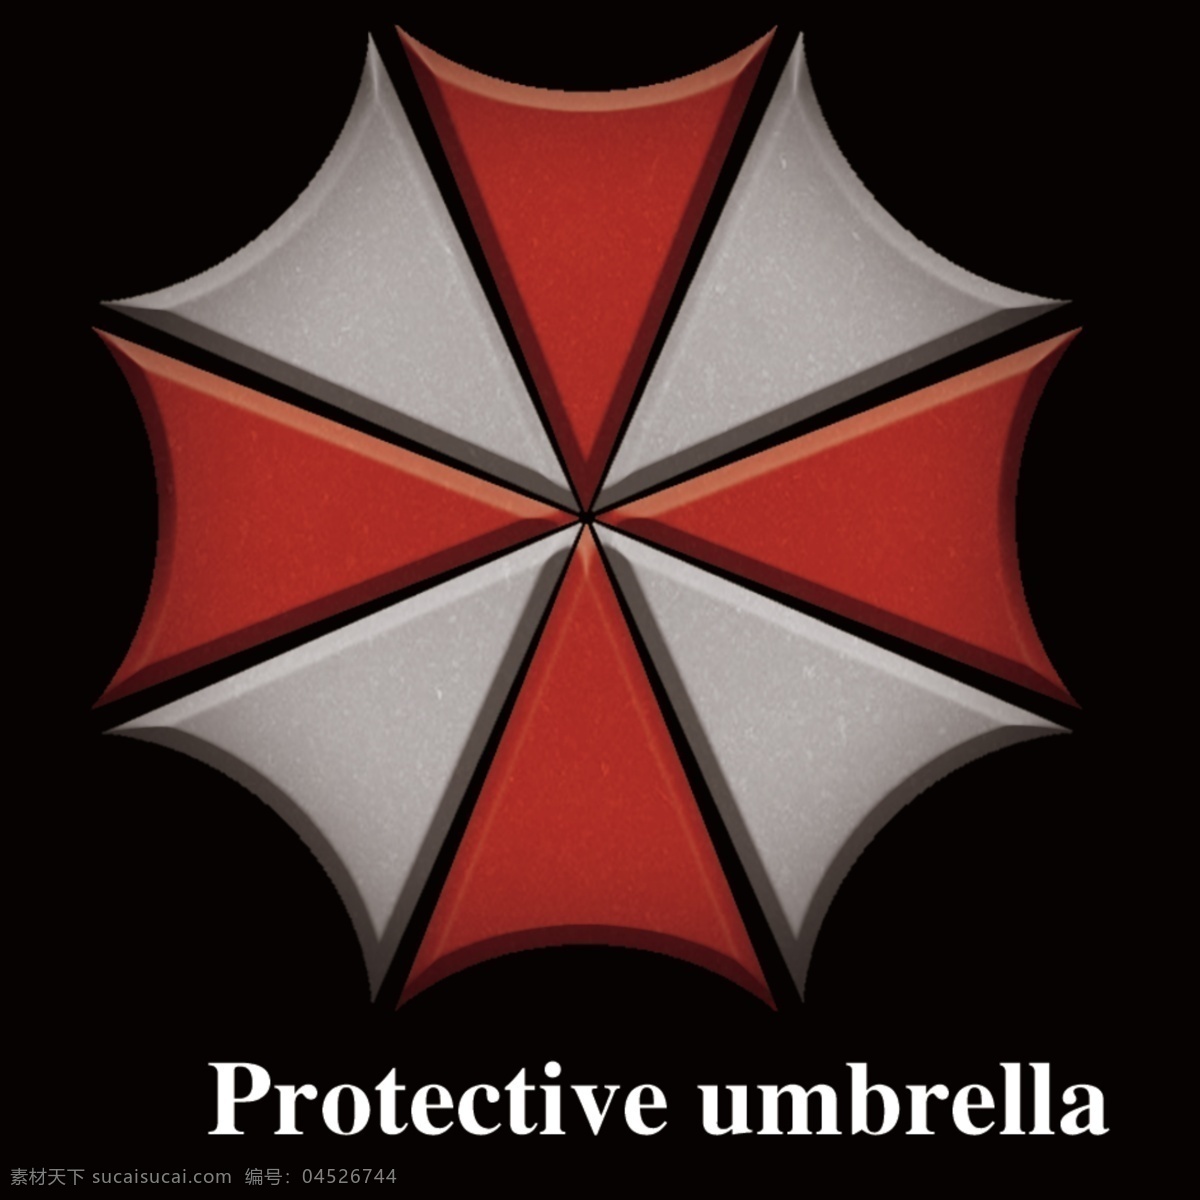 生化危机 保护伞 标识 保护伞公司 高清 原创 分层